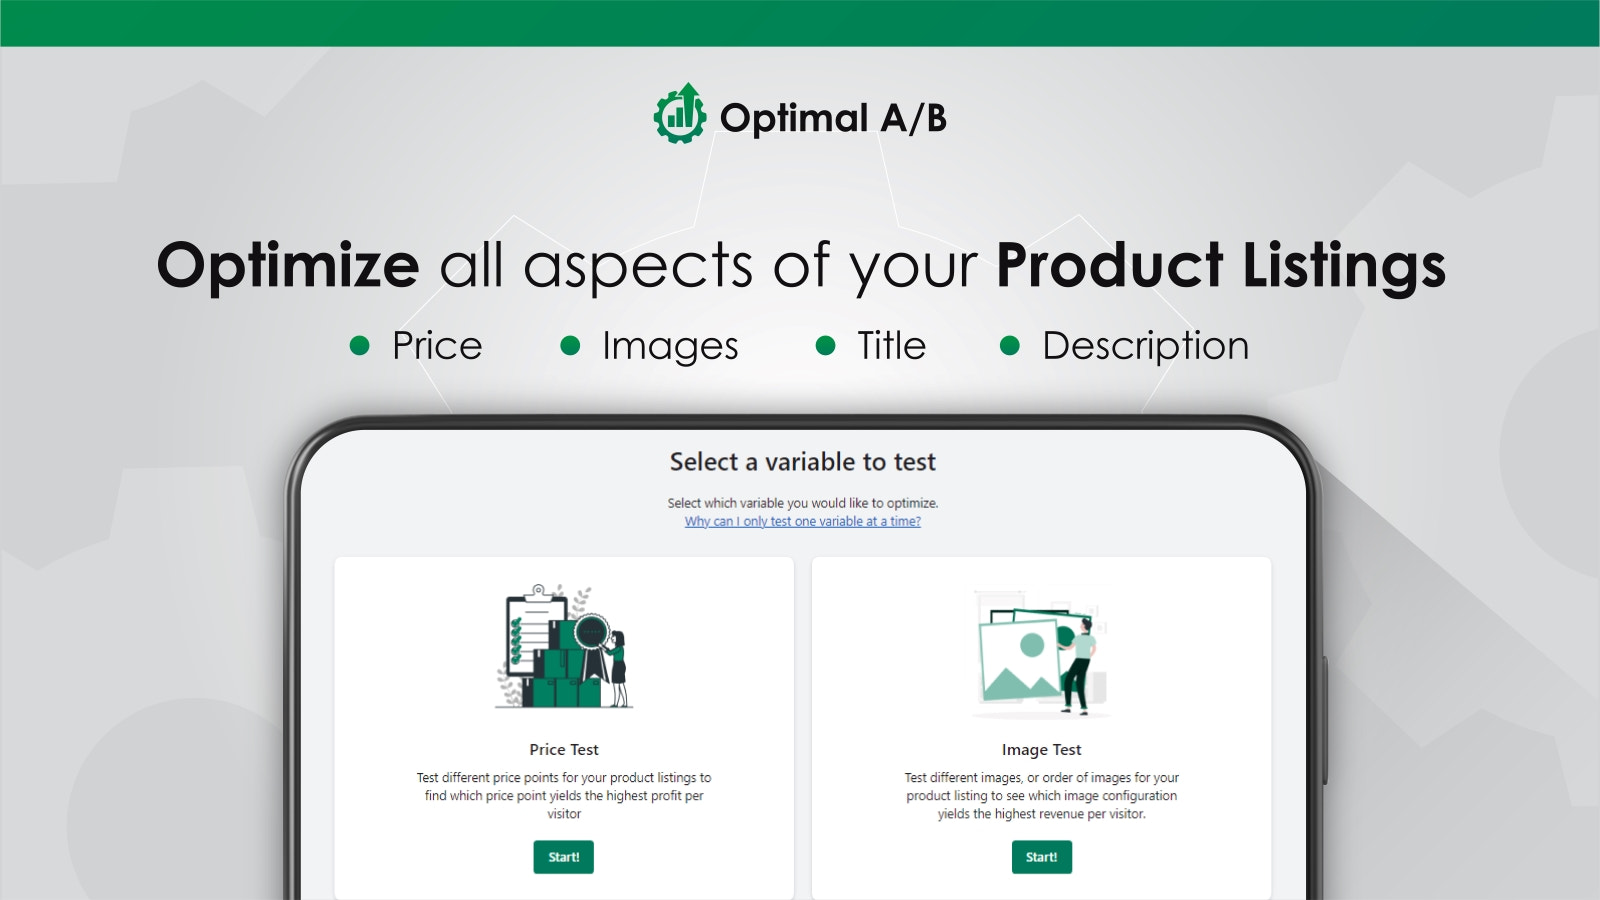 使用Optimal A/B测试价格、图片、标题和描述